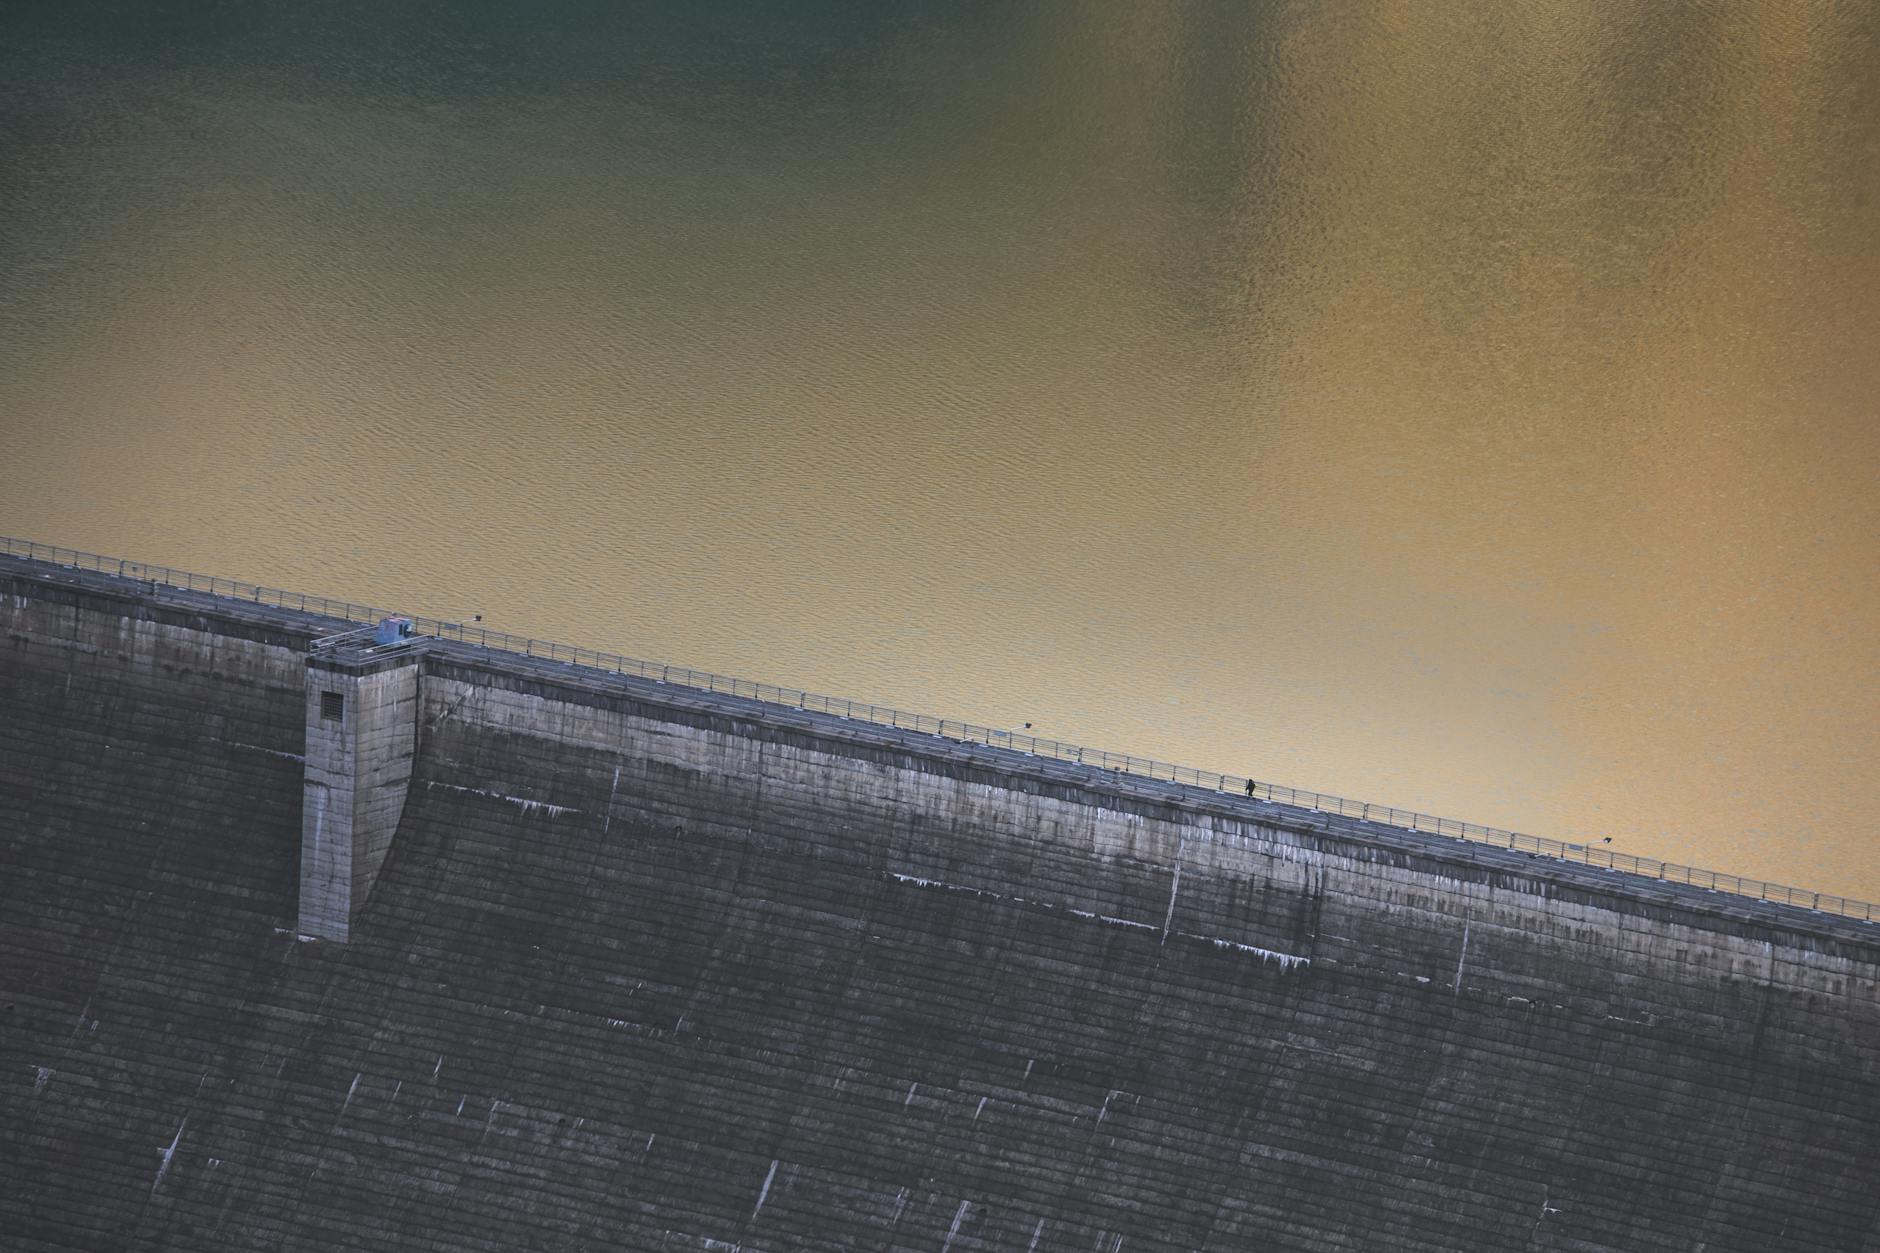 Hidroenergia și ecosistemul acvatic: o perspectivă integrată